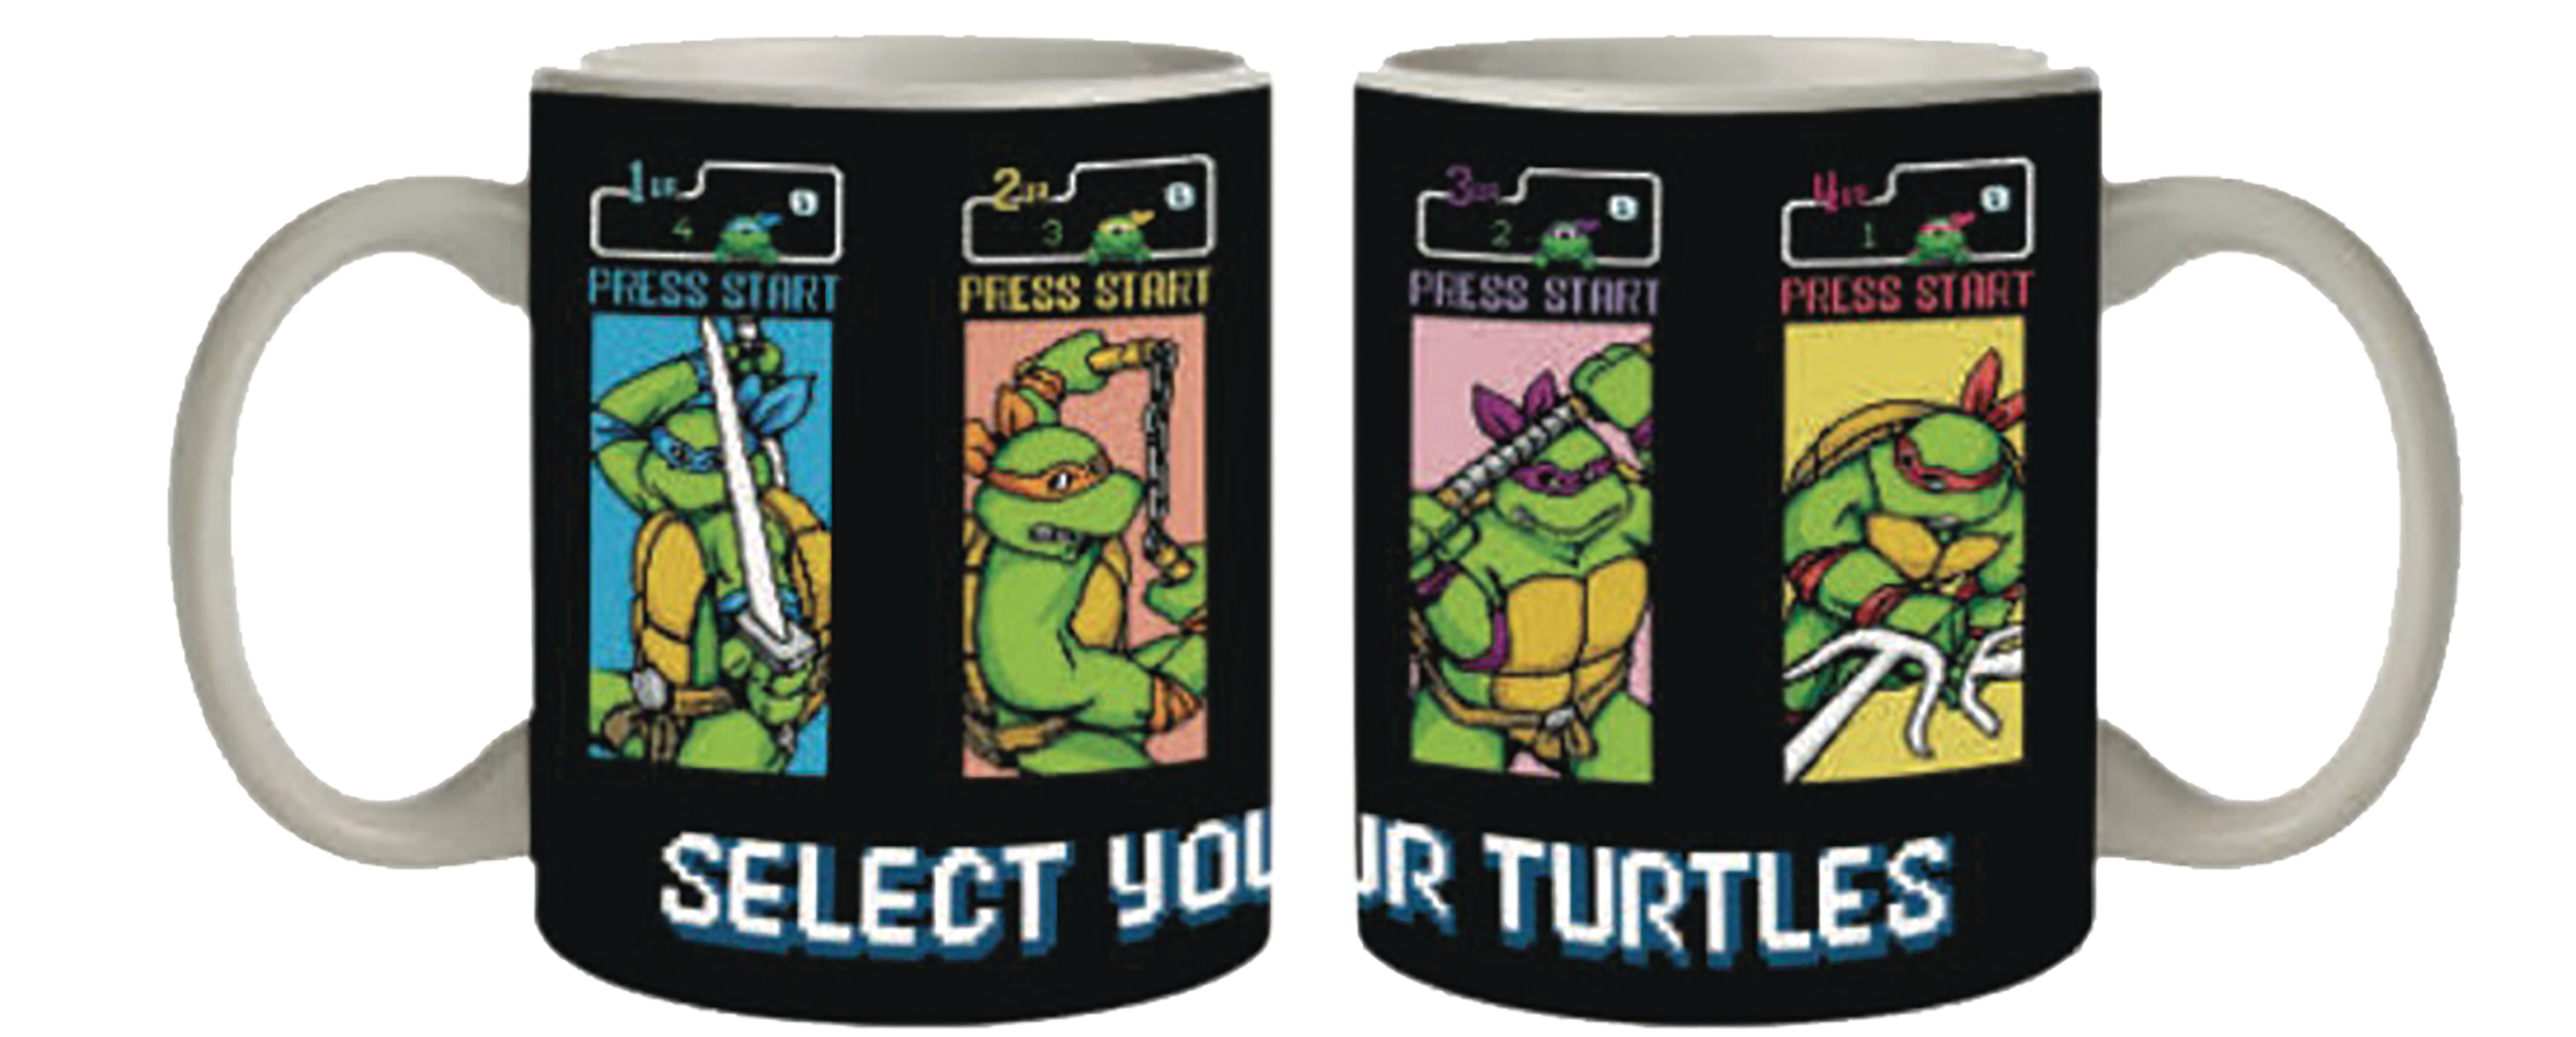 Teenage Mutant Ninja Turtles Arcade Game Coffee Mug